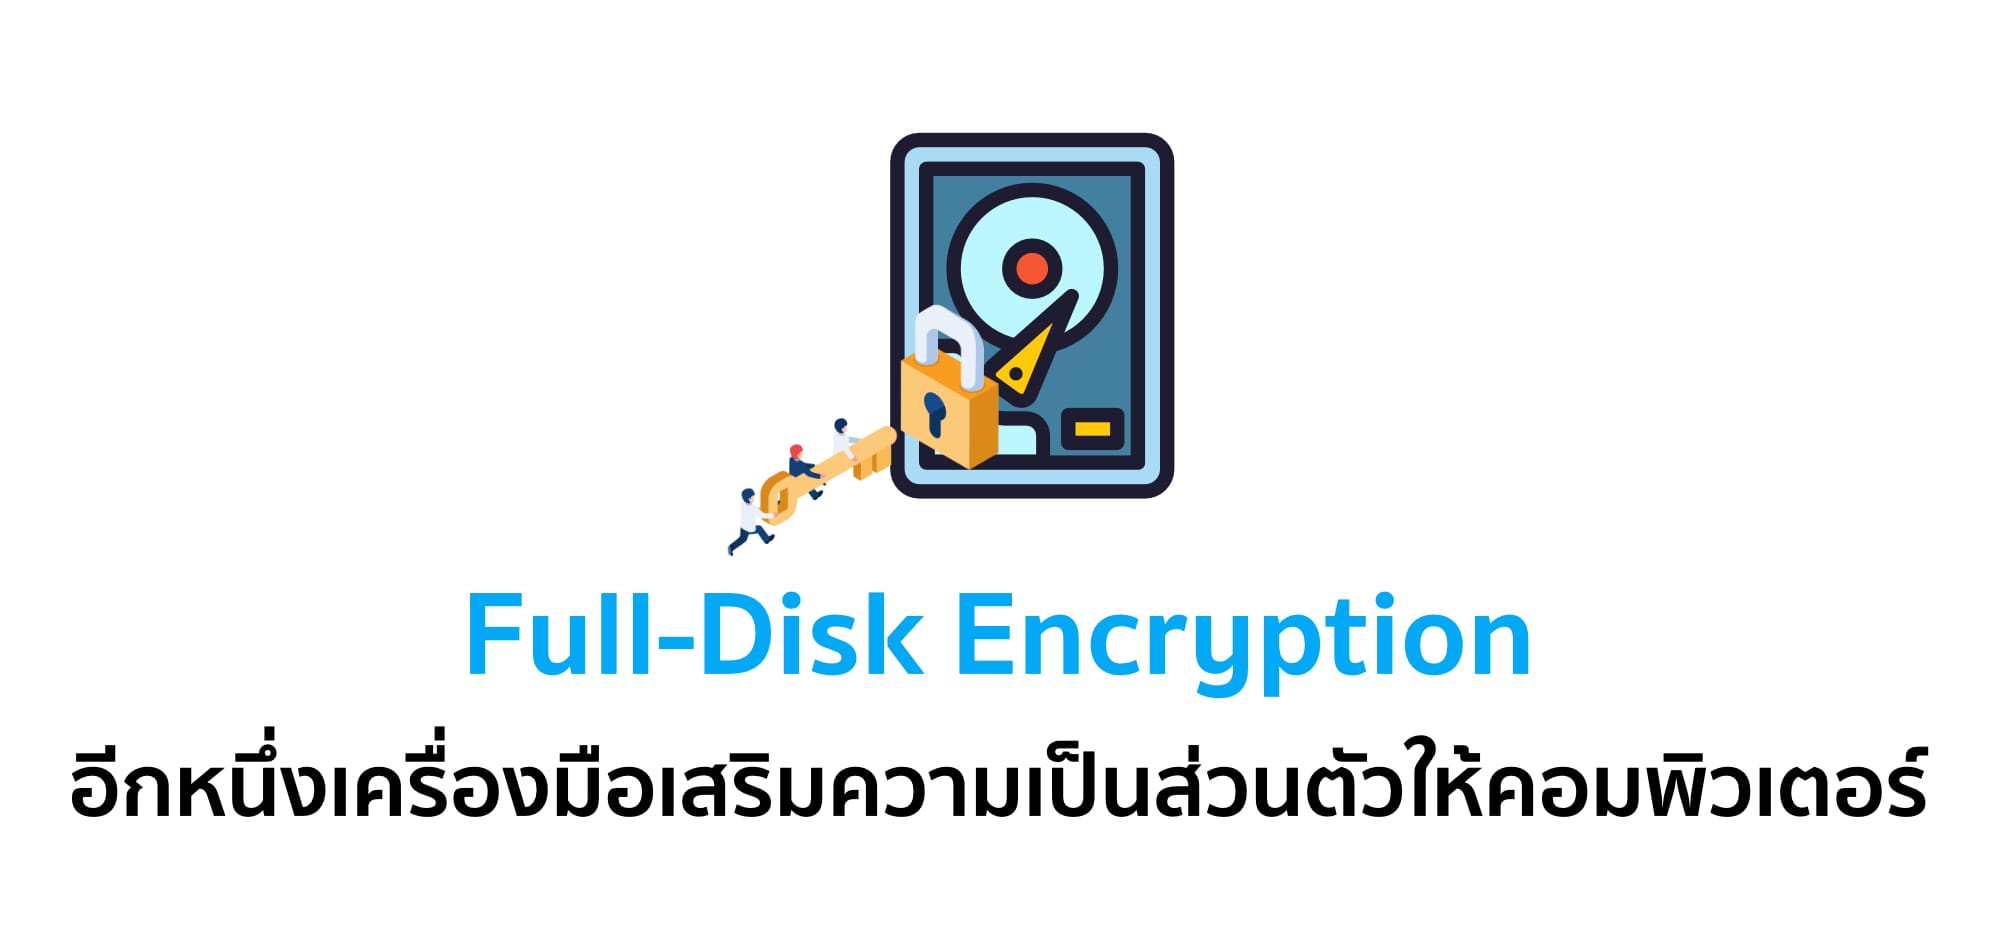 Full-Disk Encryption อีกหนึ่งเครื่องมือเสริมความเป็นส่วนตัวให้คอมพิวเตอร์